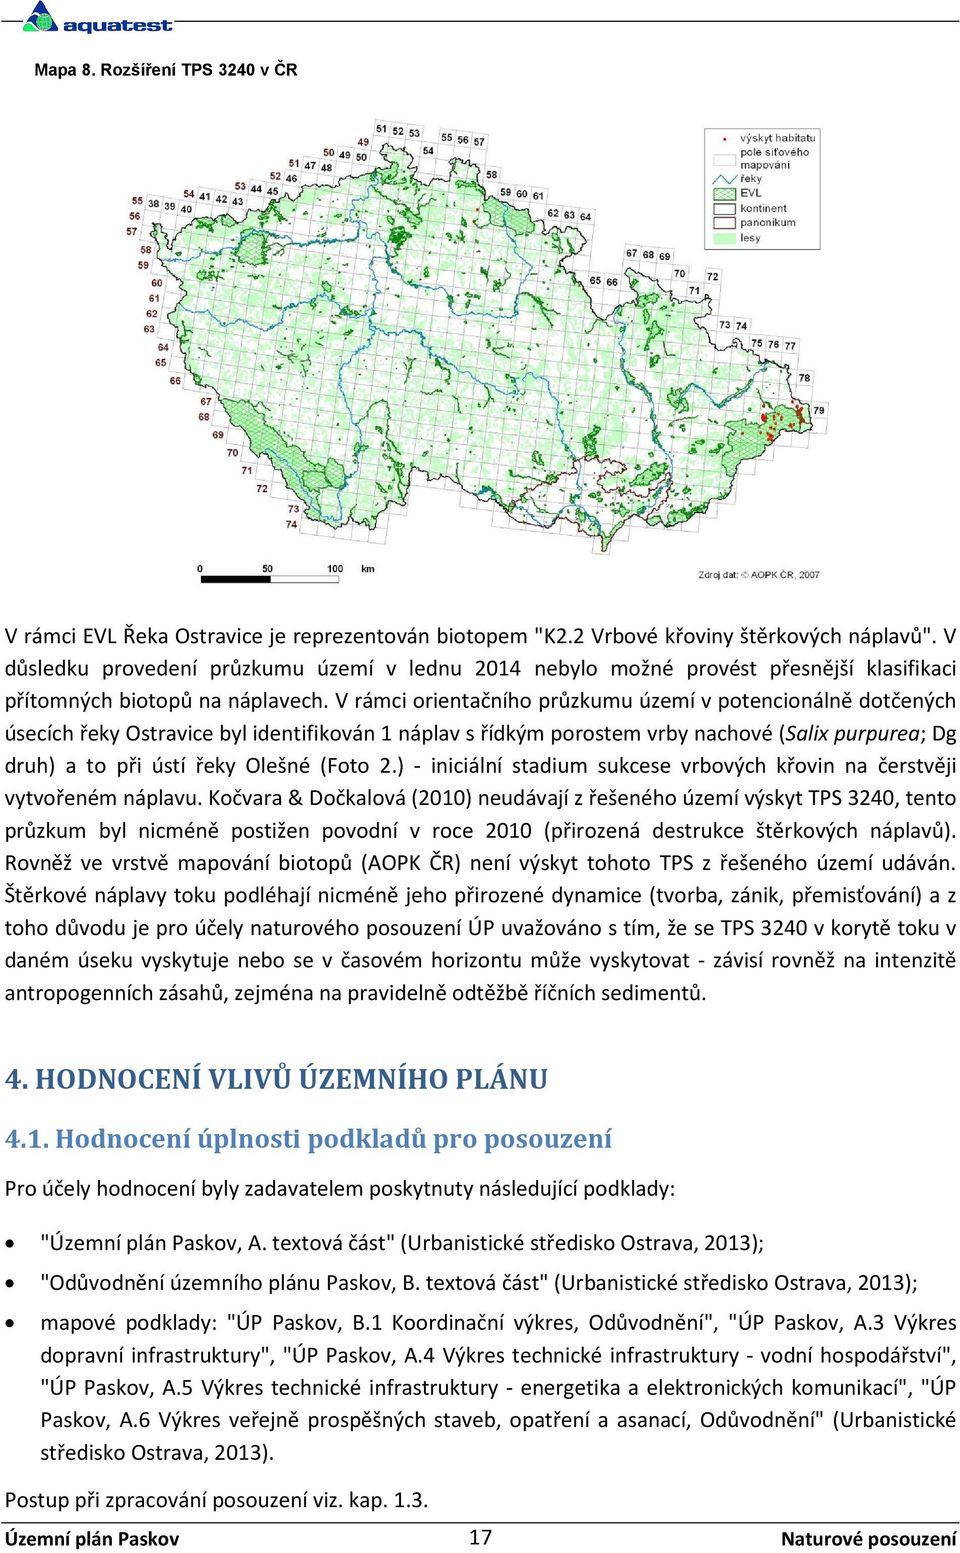 V rámci orientačního průzkumu území v potencionálně dotčených úsecích řeky Ostravice byl identifikován 1 náplav s řídkým porostem vrby nachové (Salix purpurea; Dg druh) a to při ústí řeky Olešné